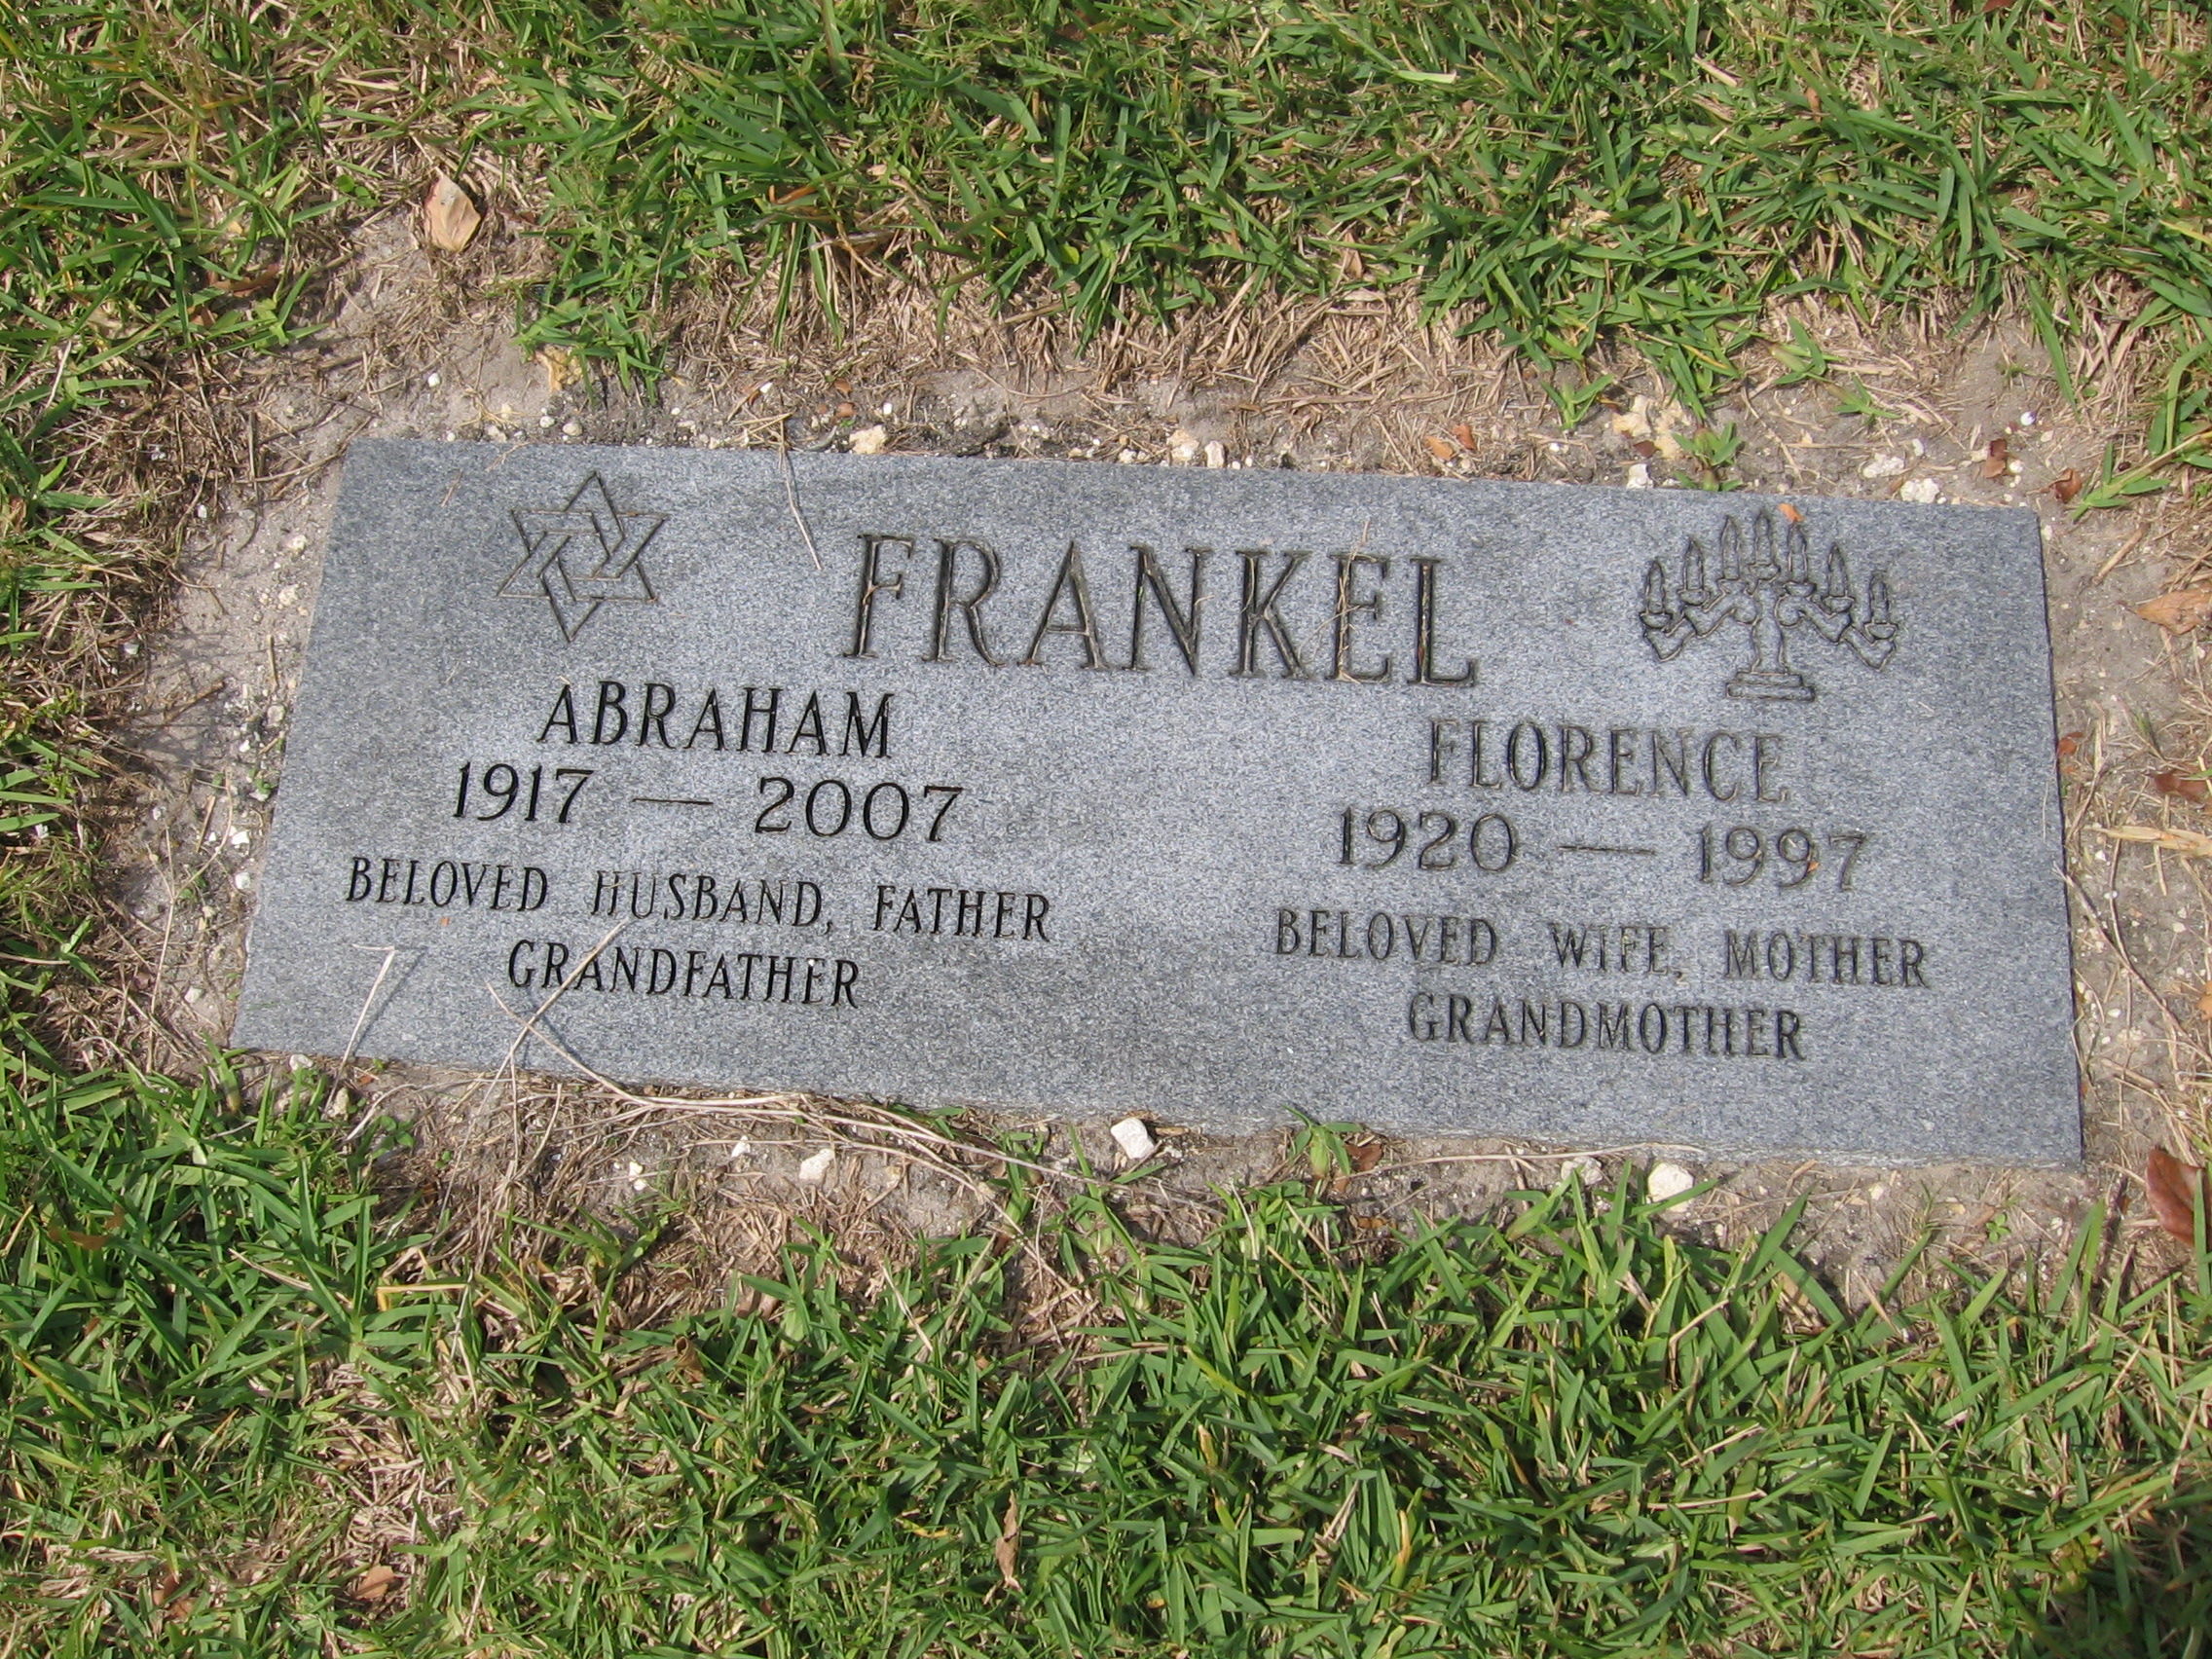 Florence Frankel